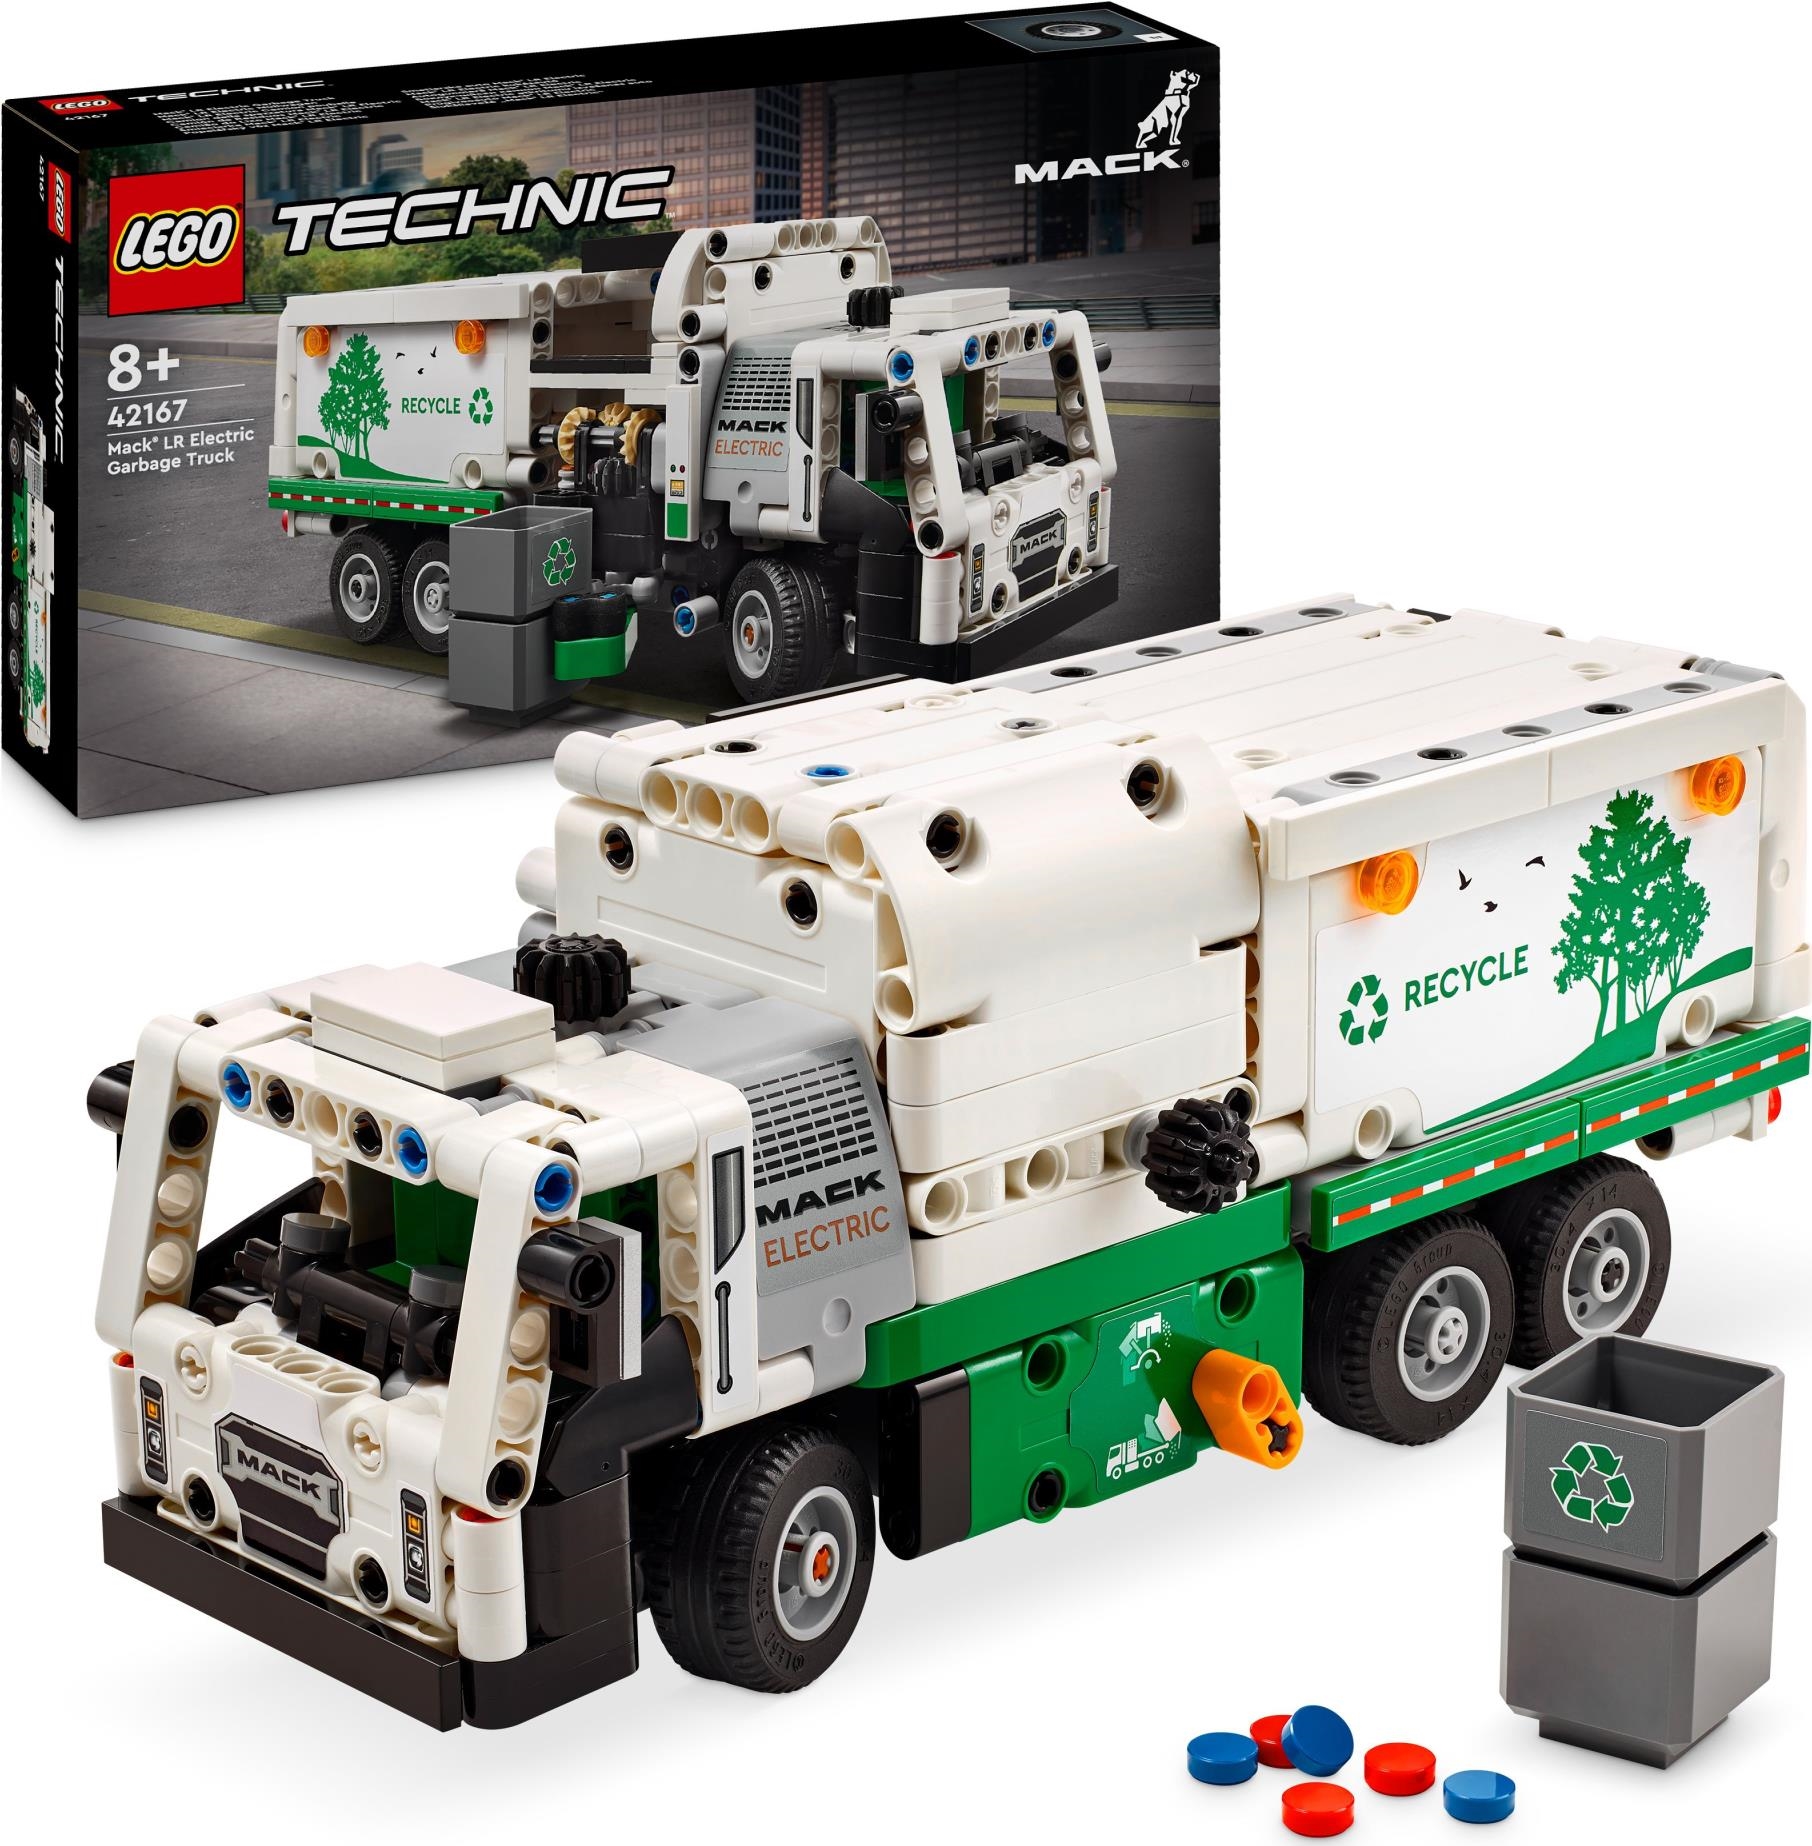 Lego: 42167 - Technic - Camion Della Spazzatura Mack Lr Electric